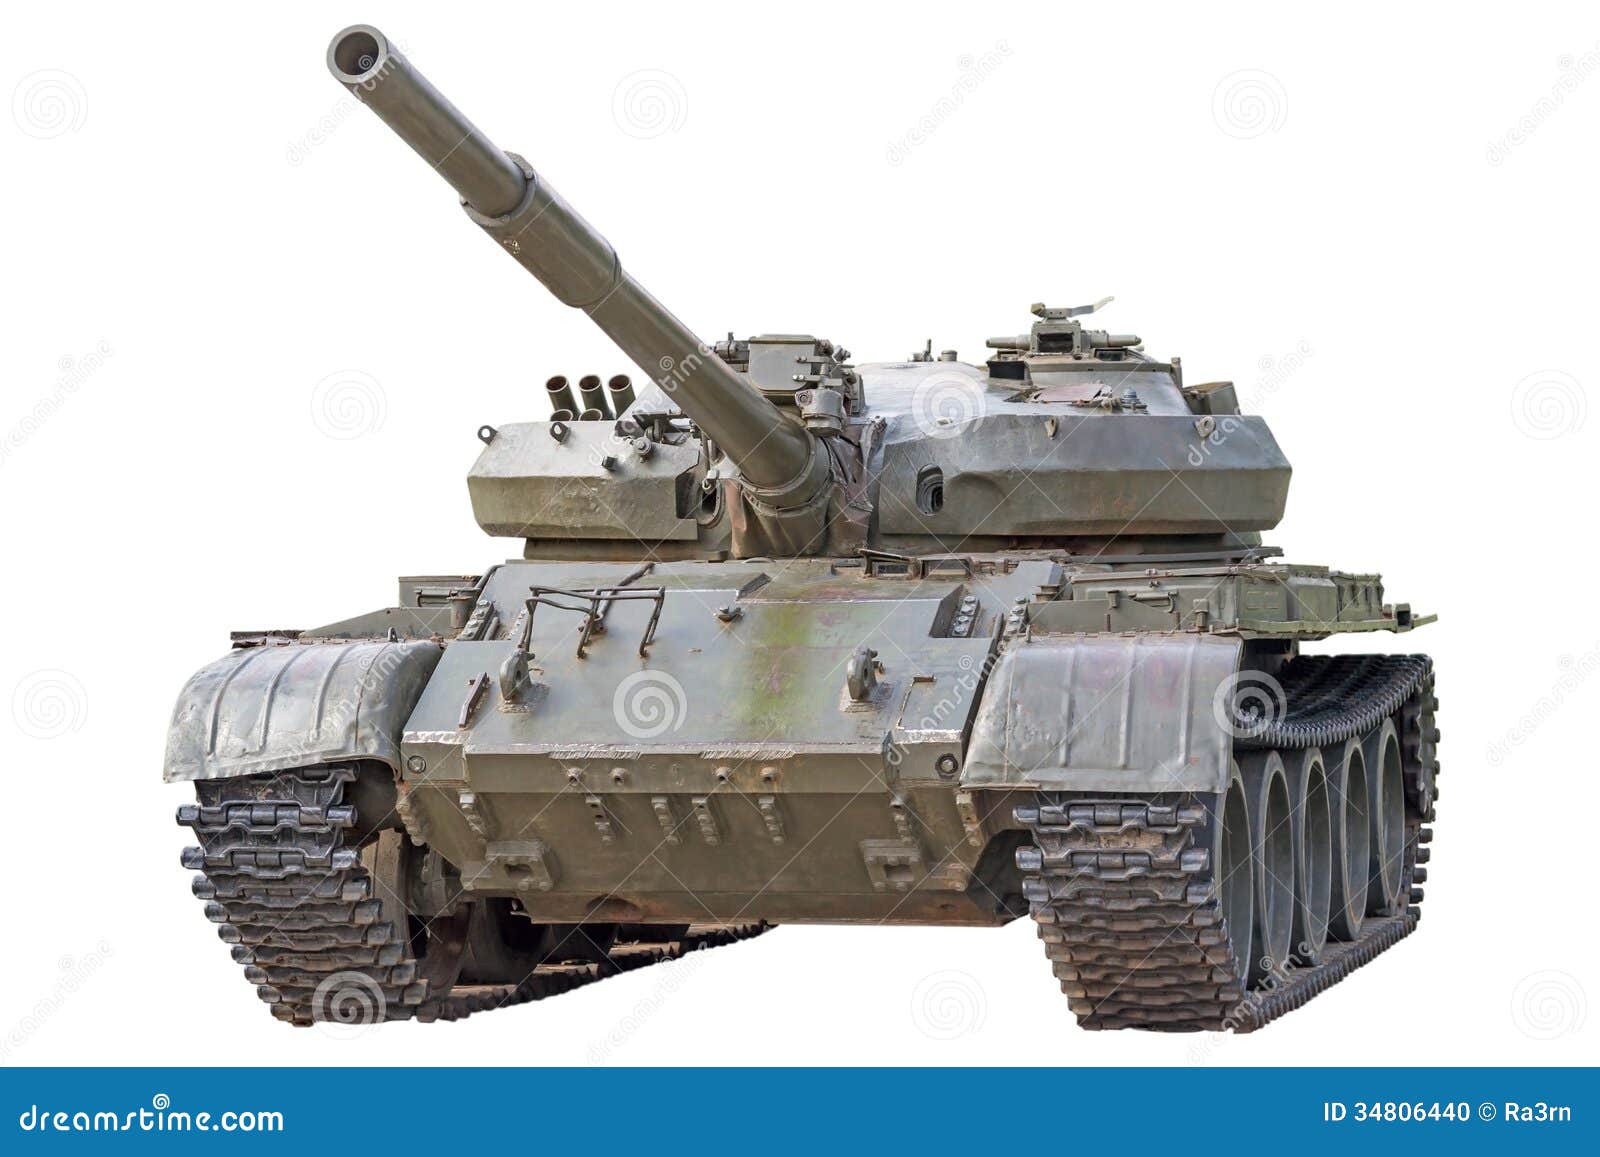 Alter Behälter. Alter sowjetischer Behälter T-72 Ural - Hauptpanzerproduktion der UDSSR.